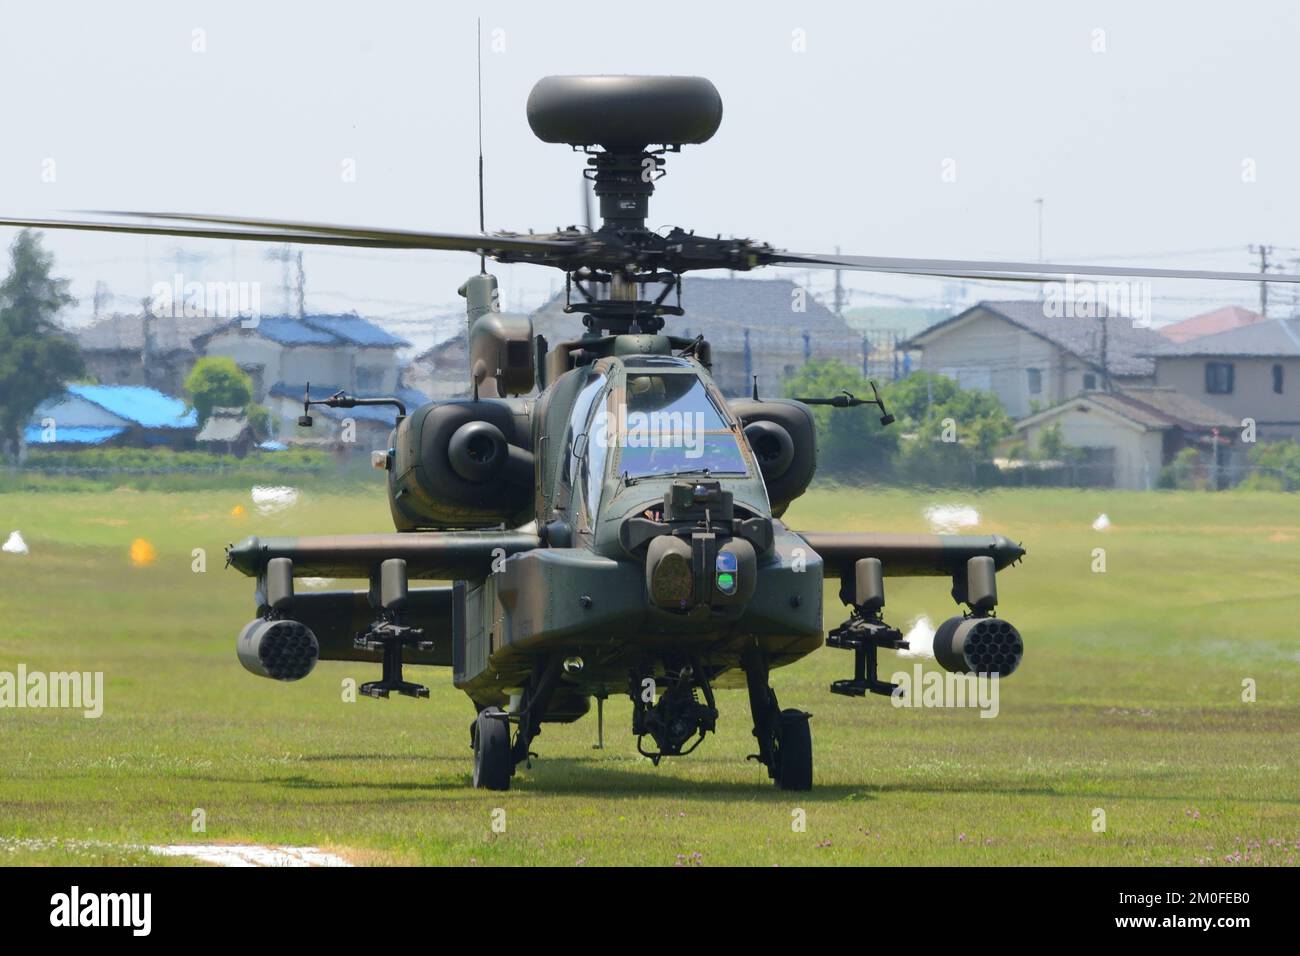 Préfecture d'Ibaraki, Japon - 17 mai 2015 : hélicoptère d'attaque Apache Longbow Boeing AH-64D de la Force d'autodéfense terrestre du Japon. Banque D'Images